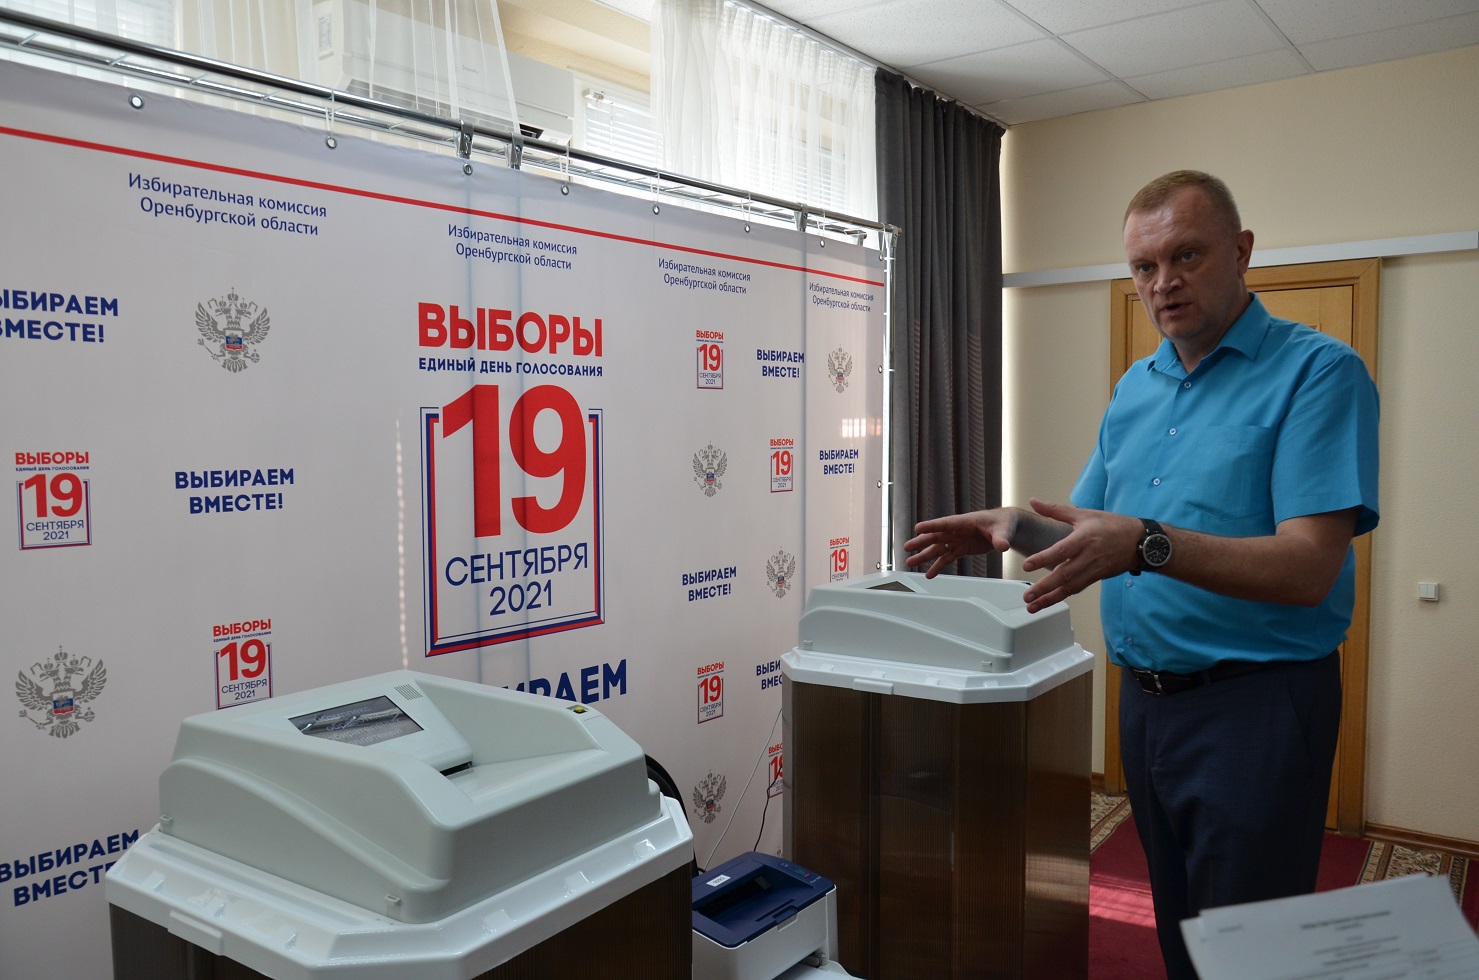 Сайт избирательной комиссии оренбургской области